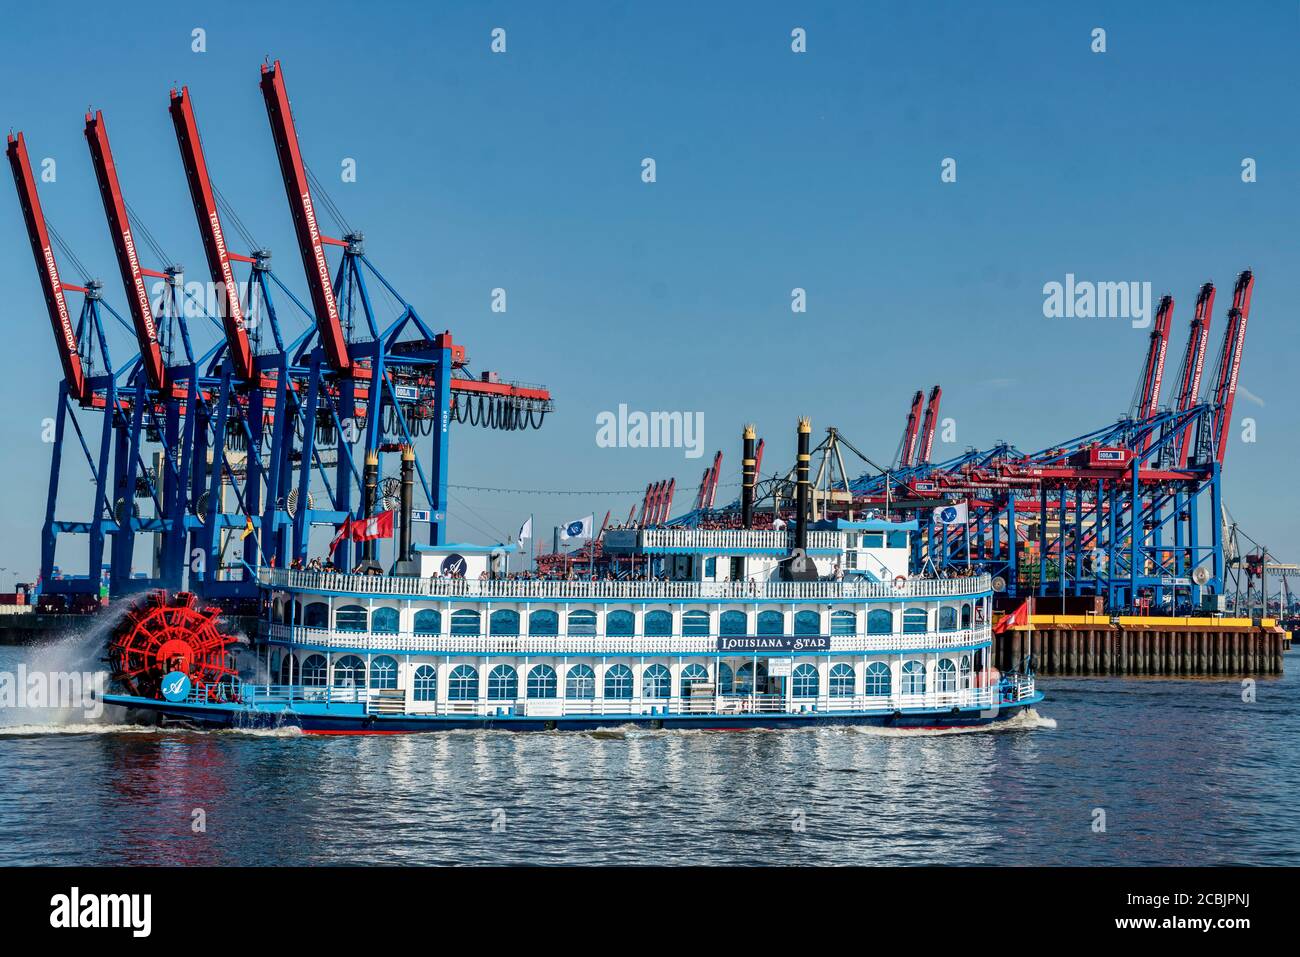 Lousina Star Tourboot vor Hafenkraenen , Hamburger Hafen, Deutschland, Europa Stock Photo